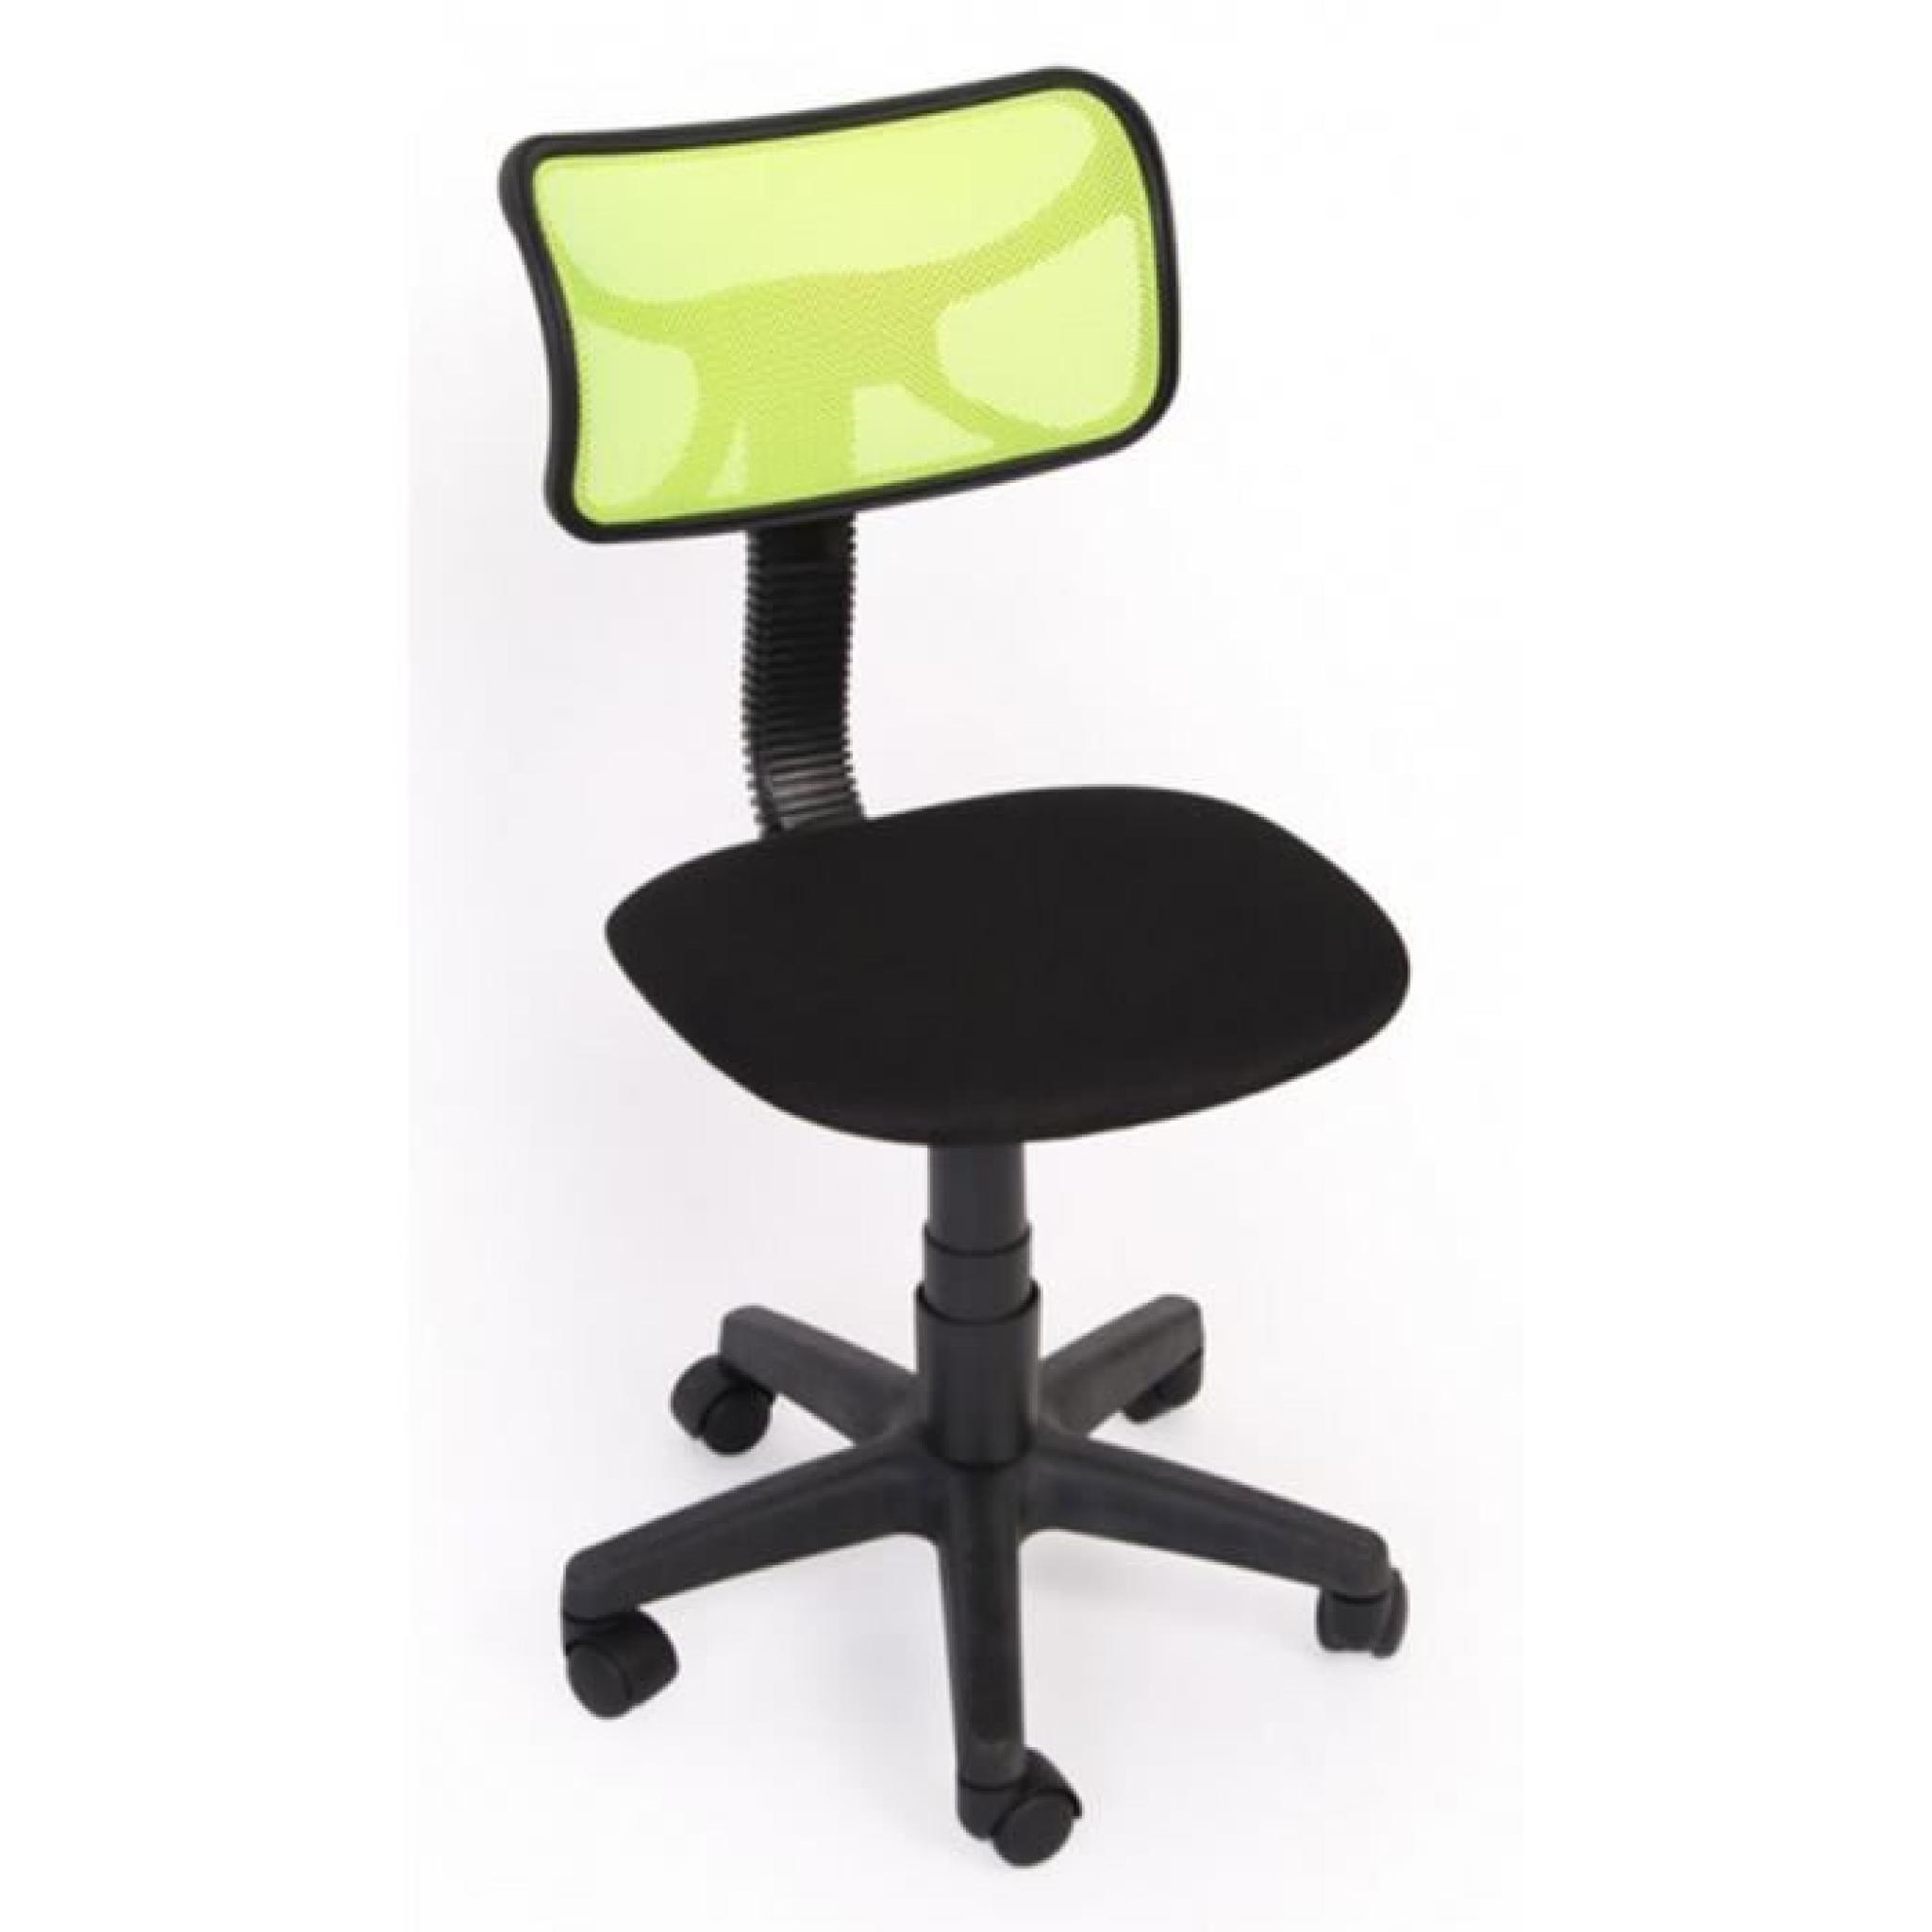 Chaise de bureau jeunesse Coloris vert, Dim : H74-84 x L 48 x P48 cm